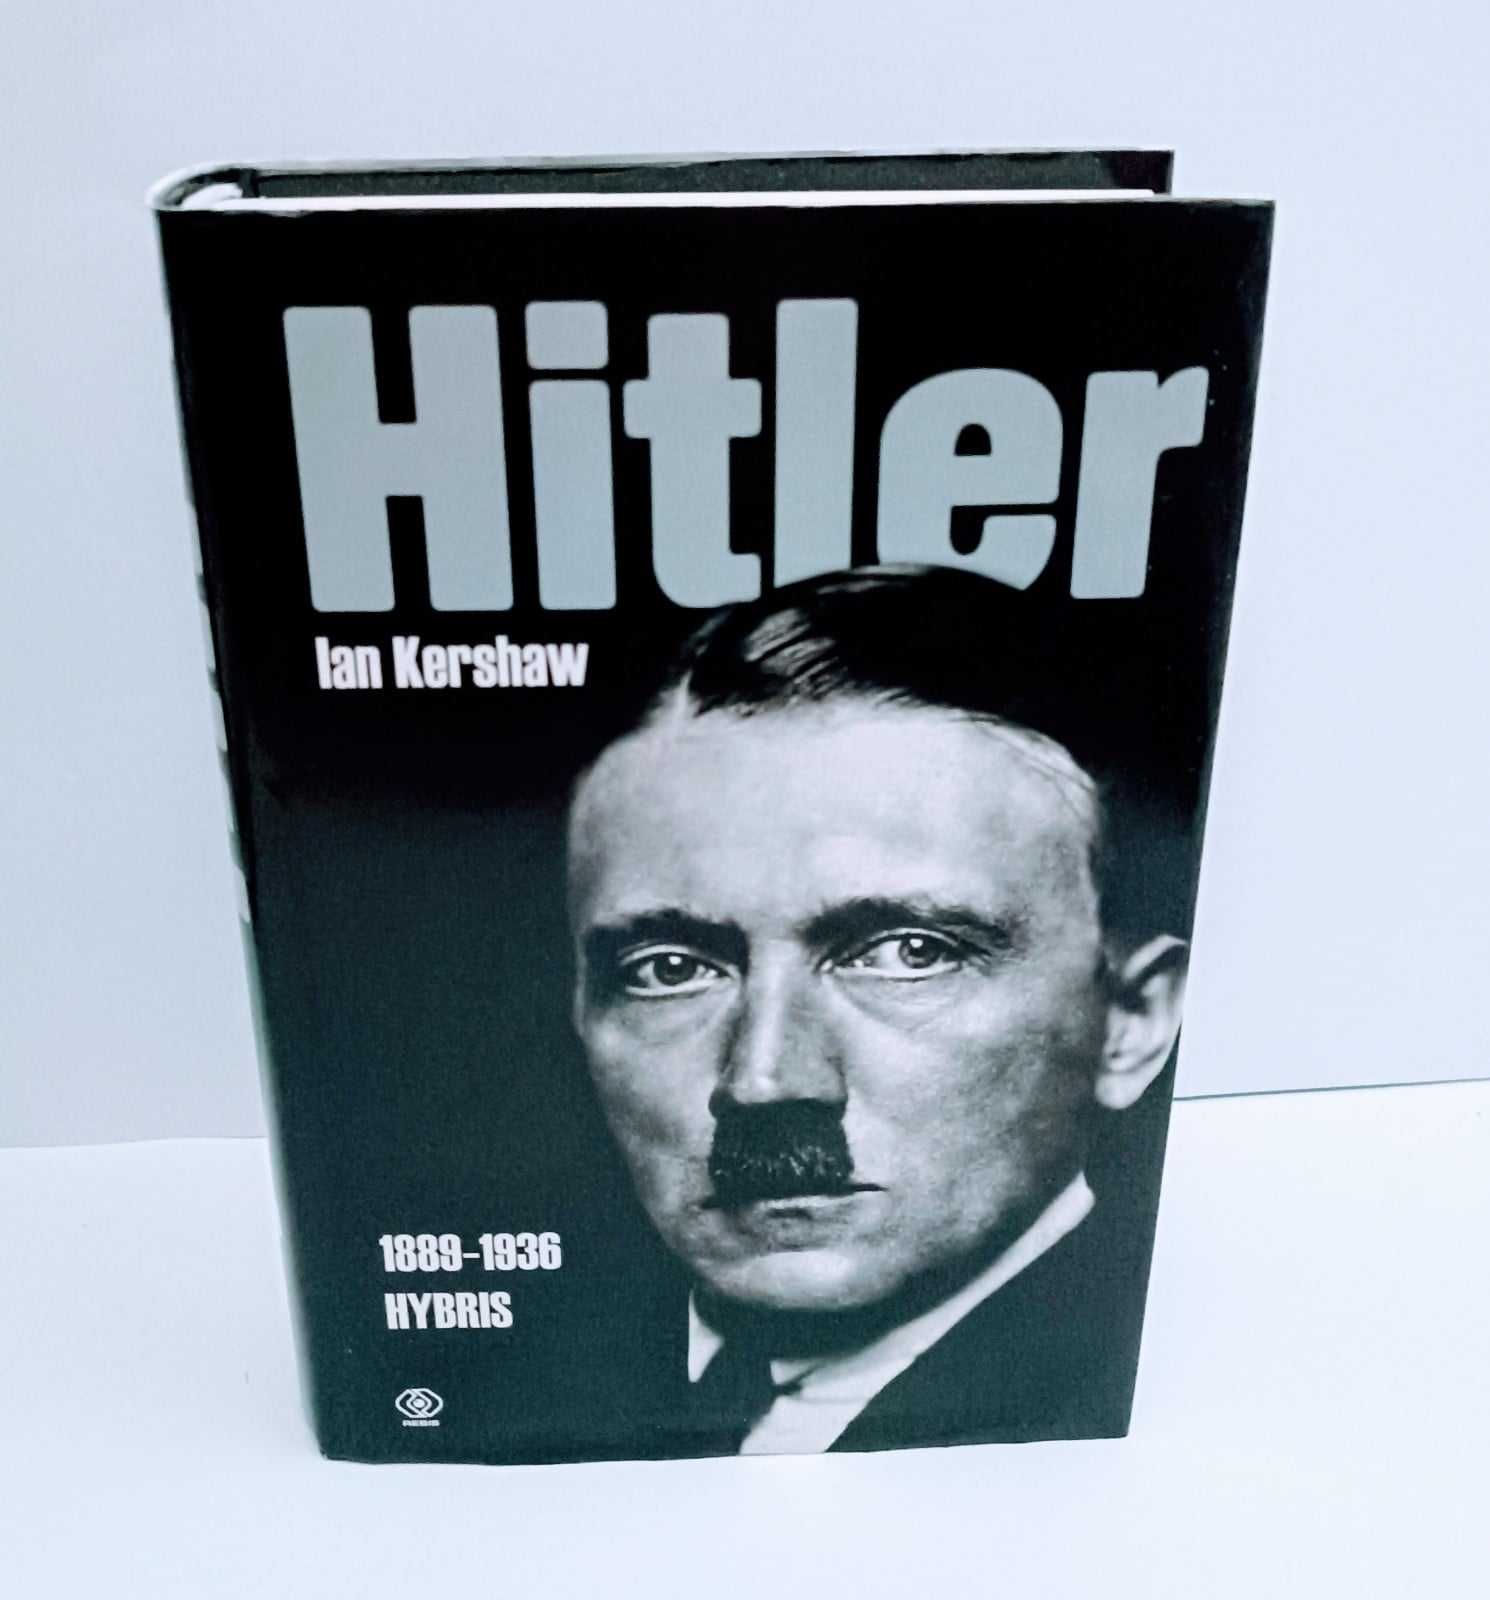 Kershaw - Hitler Hybris UNIKAT